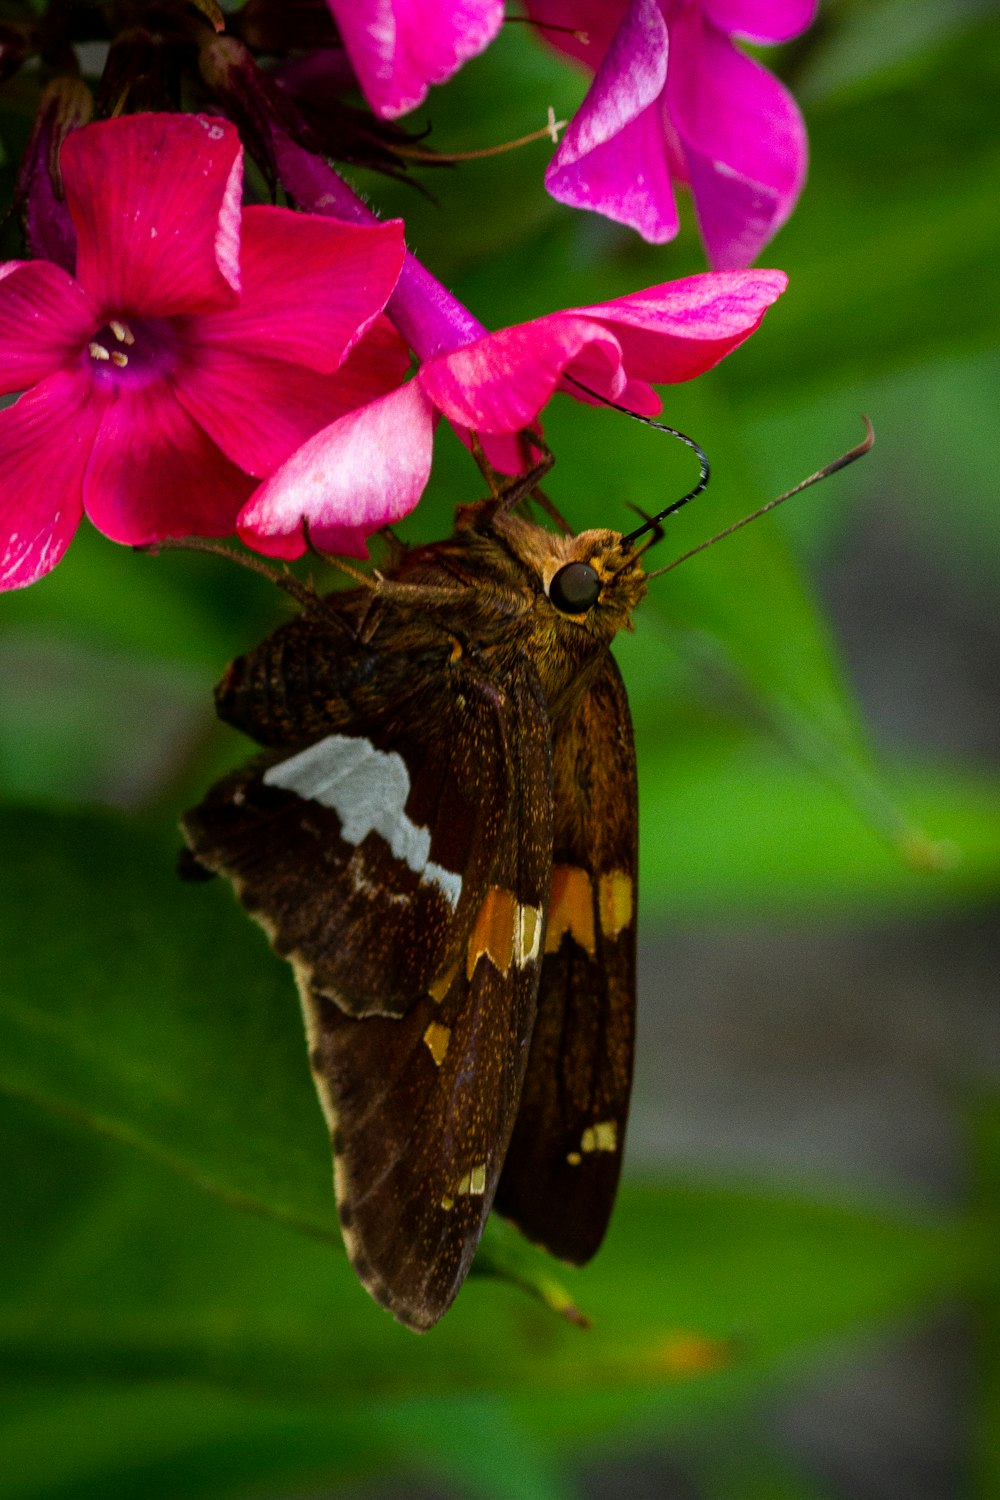 borboleta marrom e preta empoleirada na flor rosa